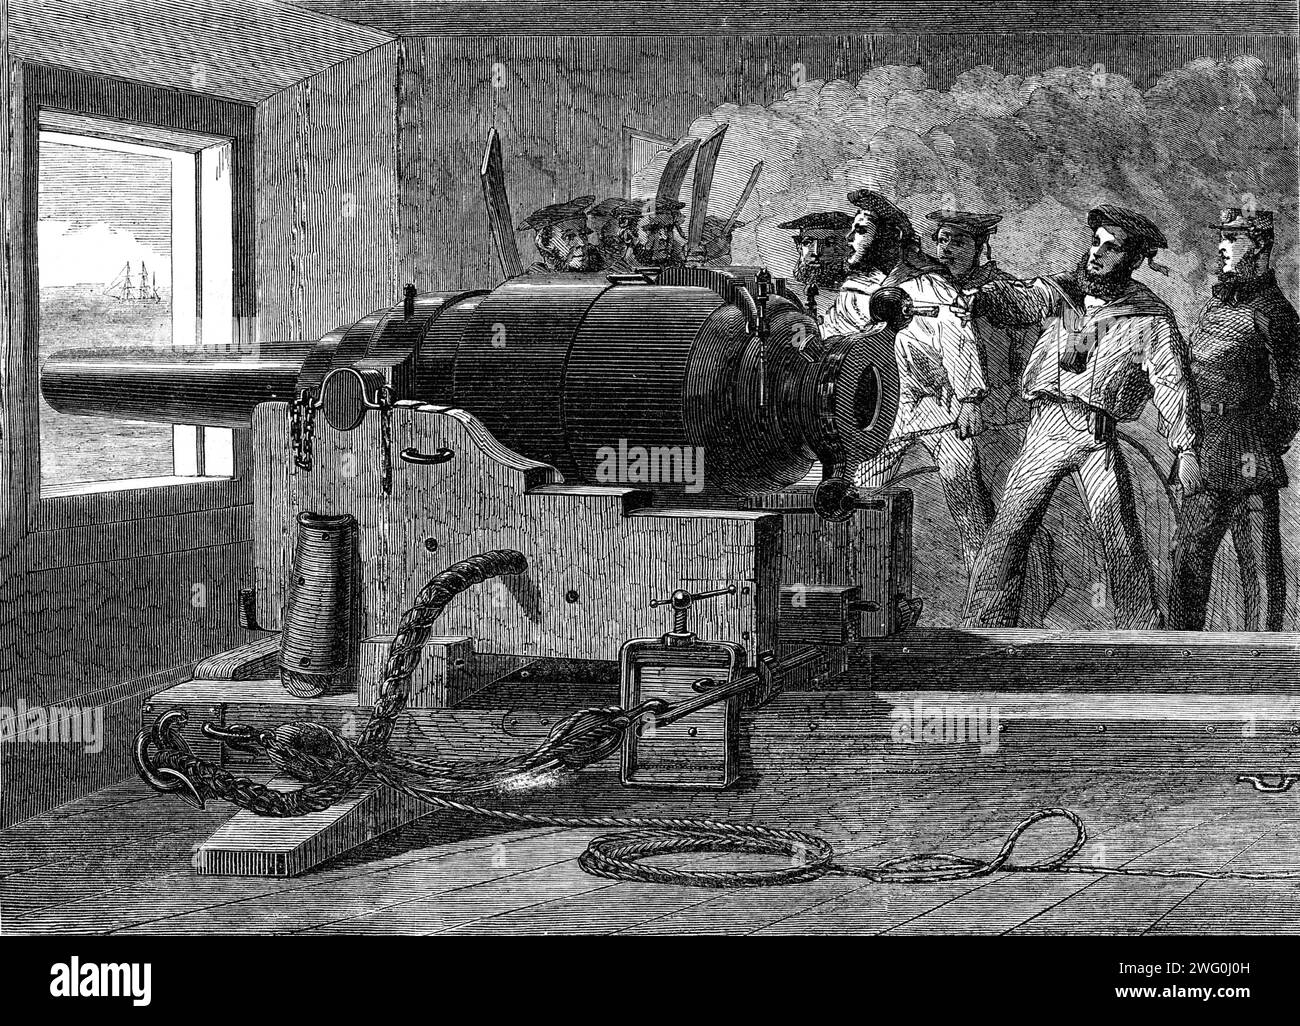 Herstellung der Armstrong-Kanone bei Woolwich Arsenal: Marineübung mit einem 100-Pfünder, 1862. Britische Seeleute feuern eine Kanone ab. Aus Illustrated London News, 1862. Stockfoto